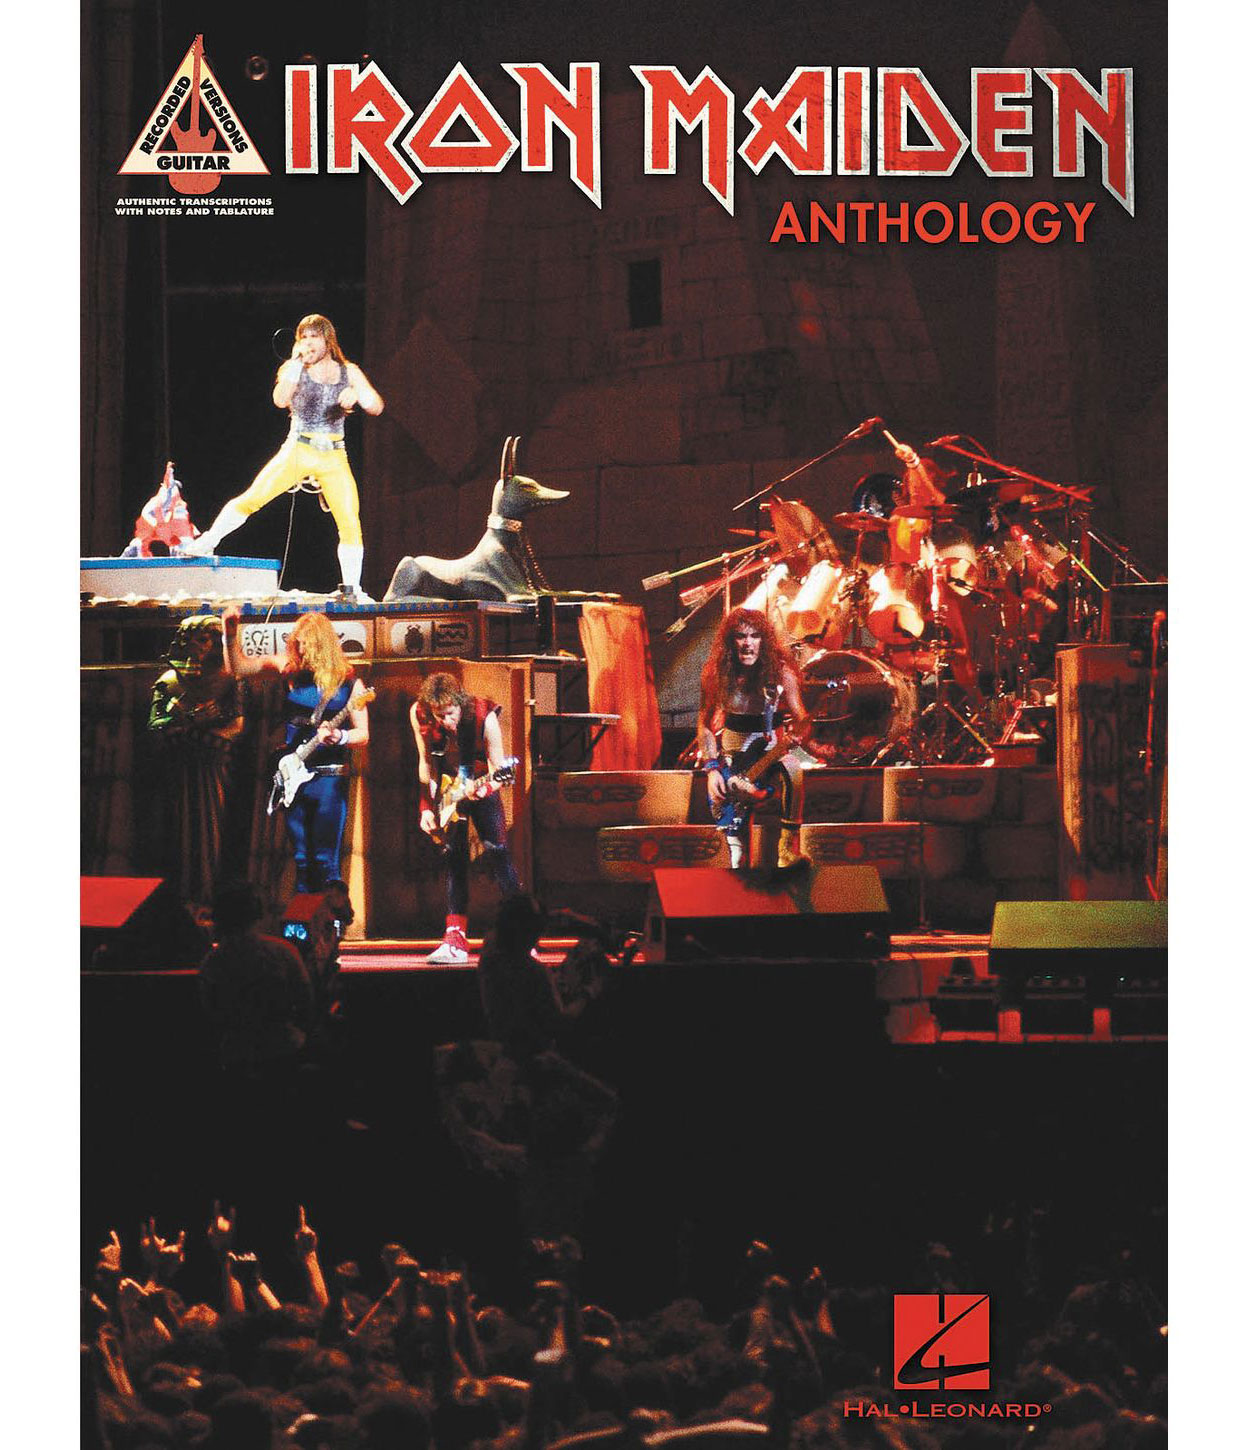  "Iron Maiden Anthology"